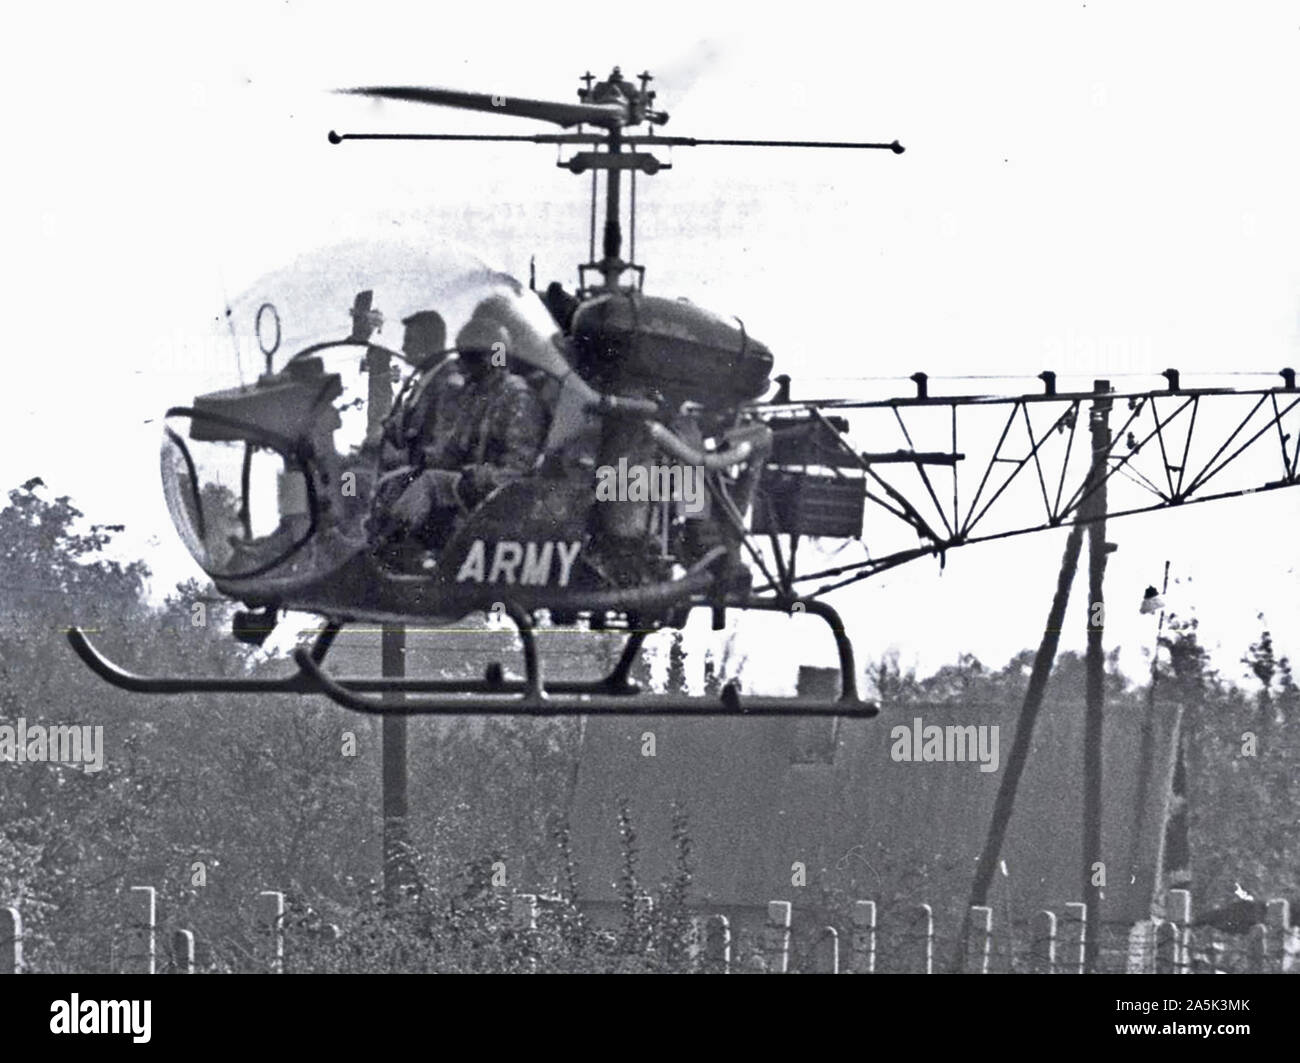 Berlin, Oktober 1961 - U.S. Army Hubschrauber Umfragen die Arbeit der Kommunistischen arbeit Bataillone entlang der Grenze. Da die Kommunisten zuerst die Zeile am 13. August verbarrikadiert, amerikanischen Hubschrauber tägliche Beobachtung Ausflüge gemacht. Stockfoto